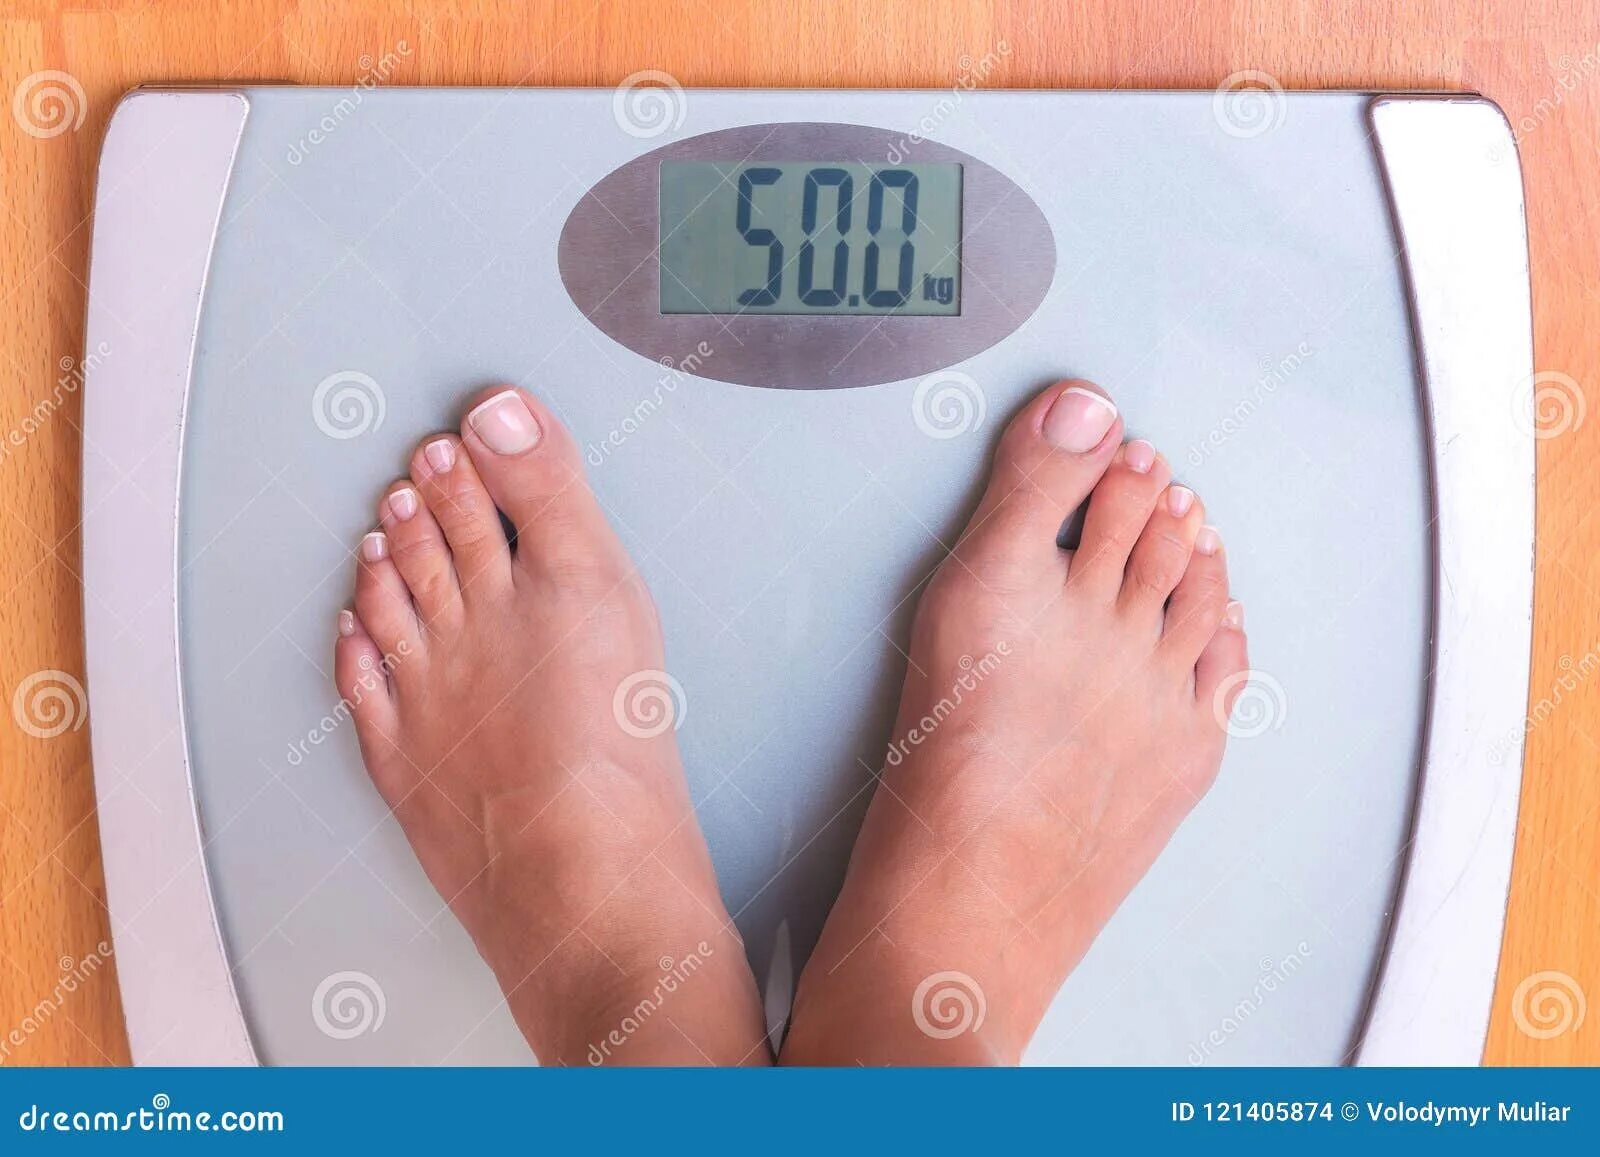 50 Кг на весах. Весы напольные 50 кг. Вес 50 кг на весах. Девушка на весах 50 кг.